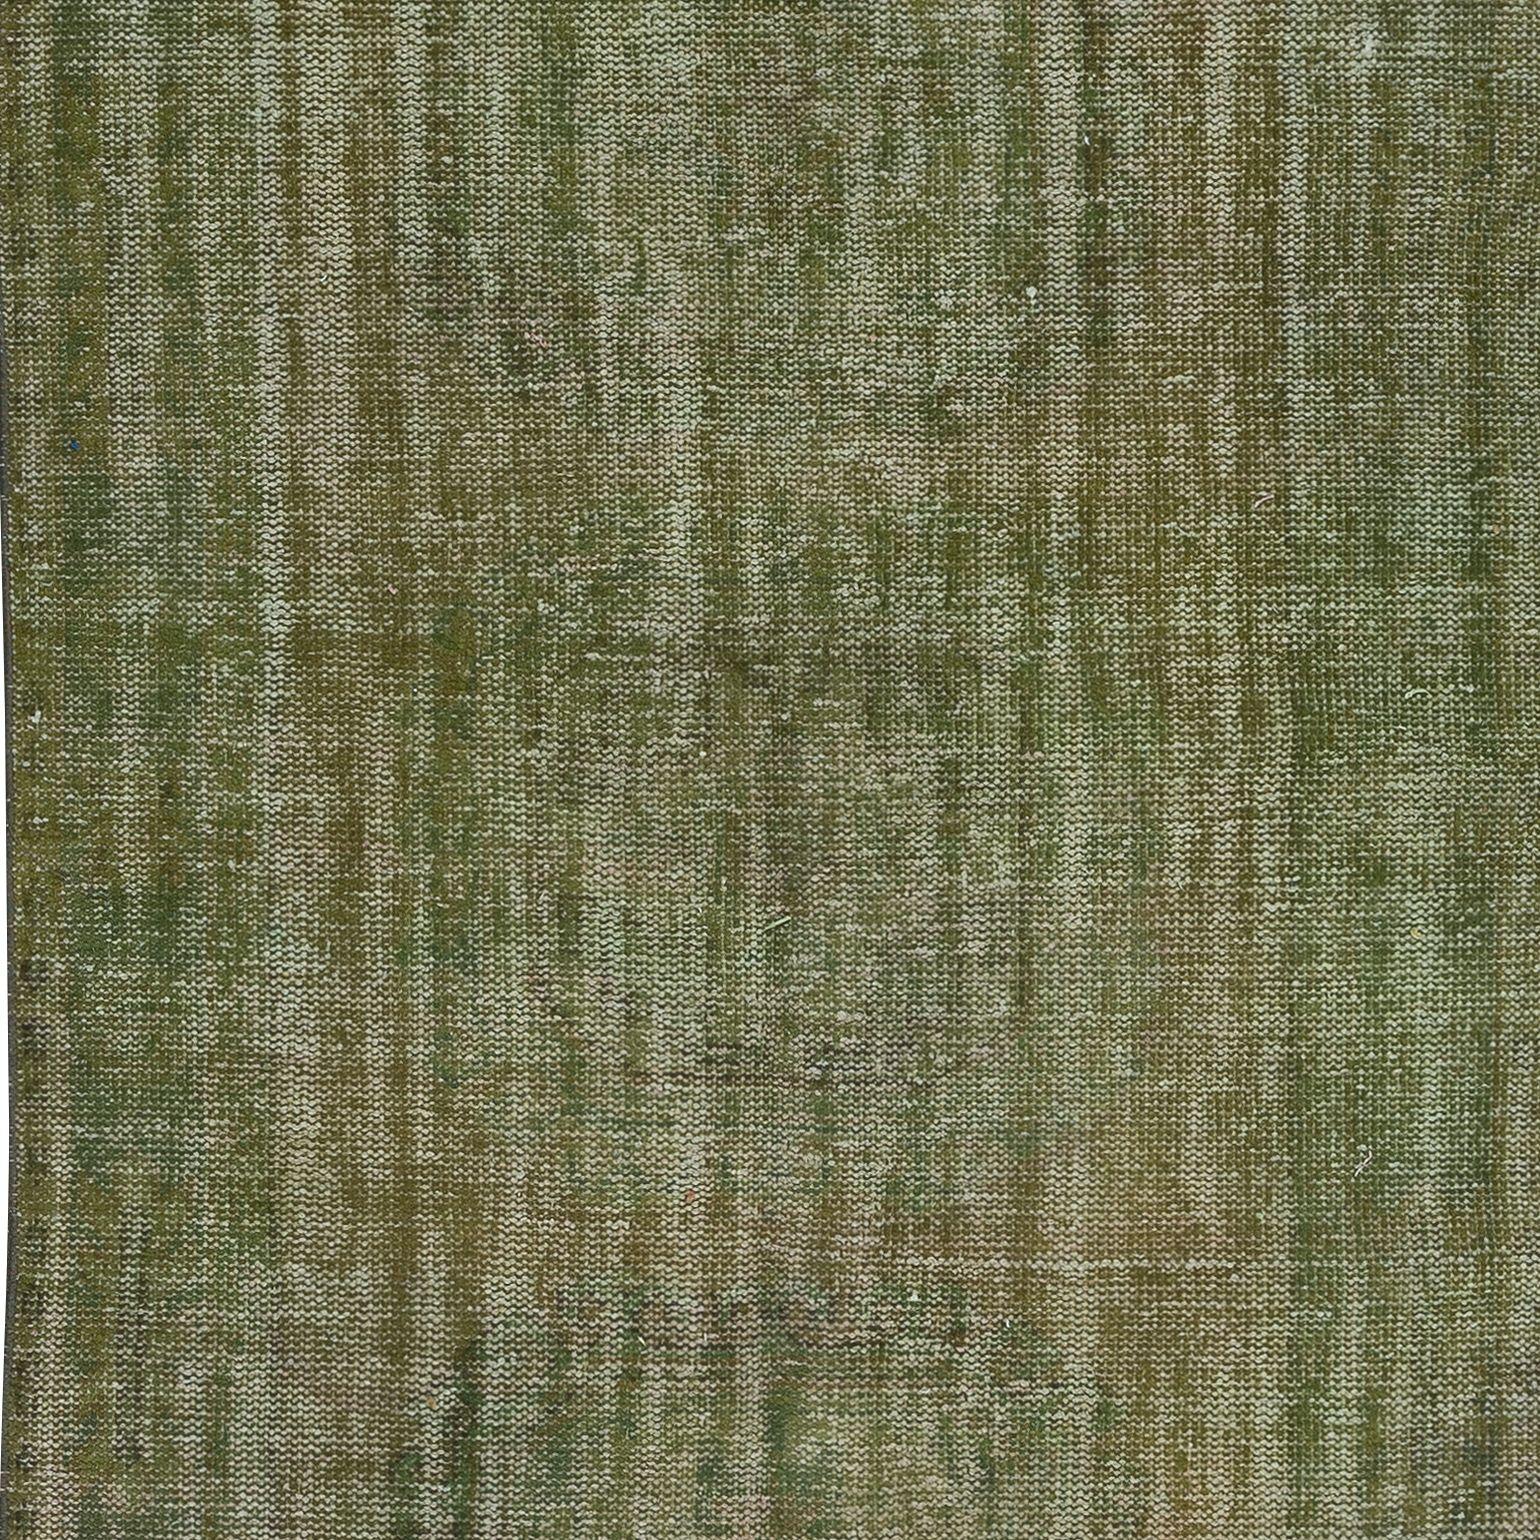 4.2x11.5 Ft Handmade Anatolian Runner Rug in Moss Green, Modern Corridor Carpet In Good Condition For Sale In Philadelphia, PA